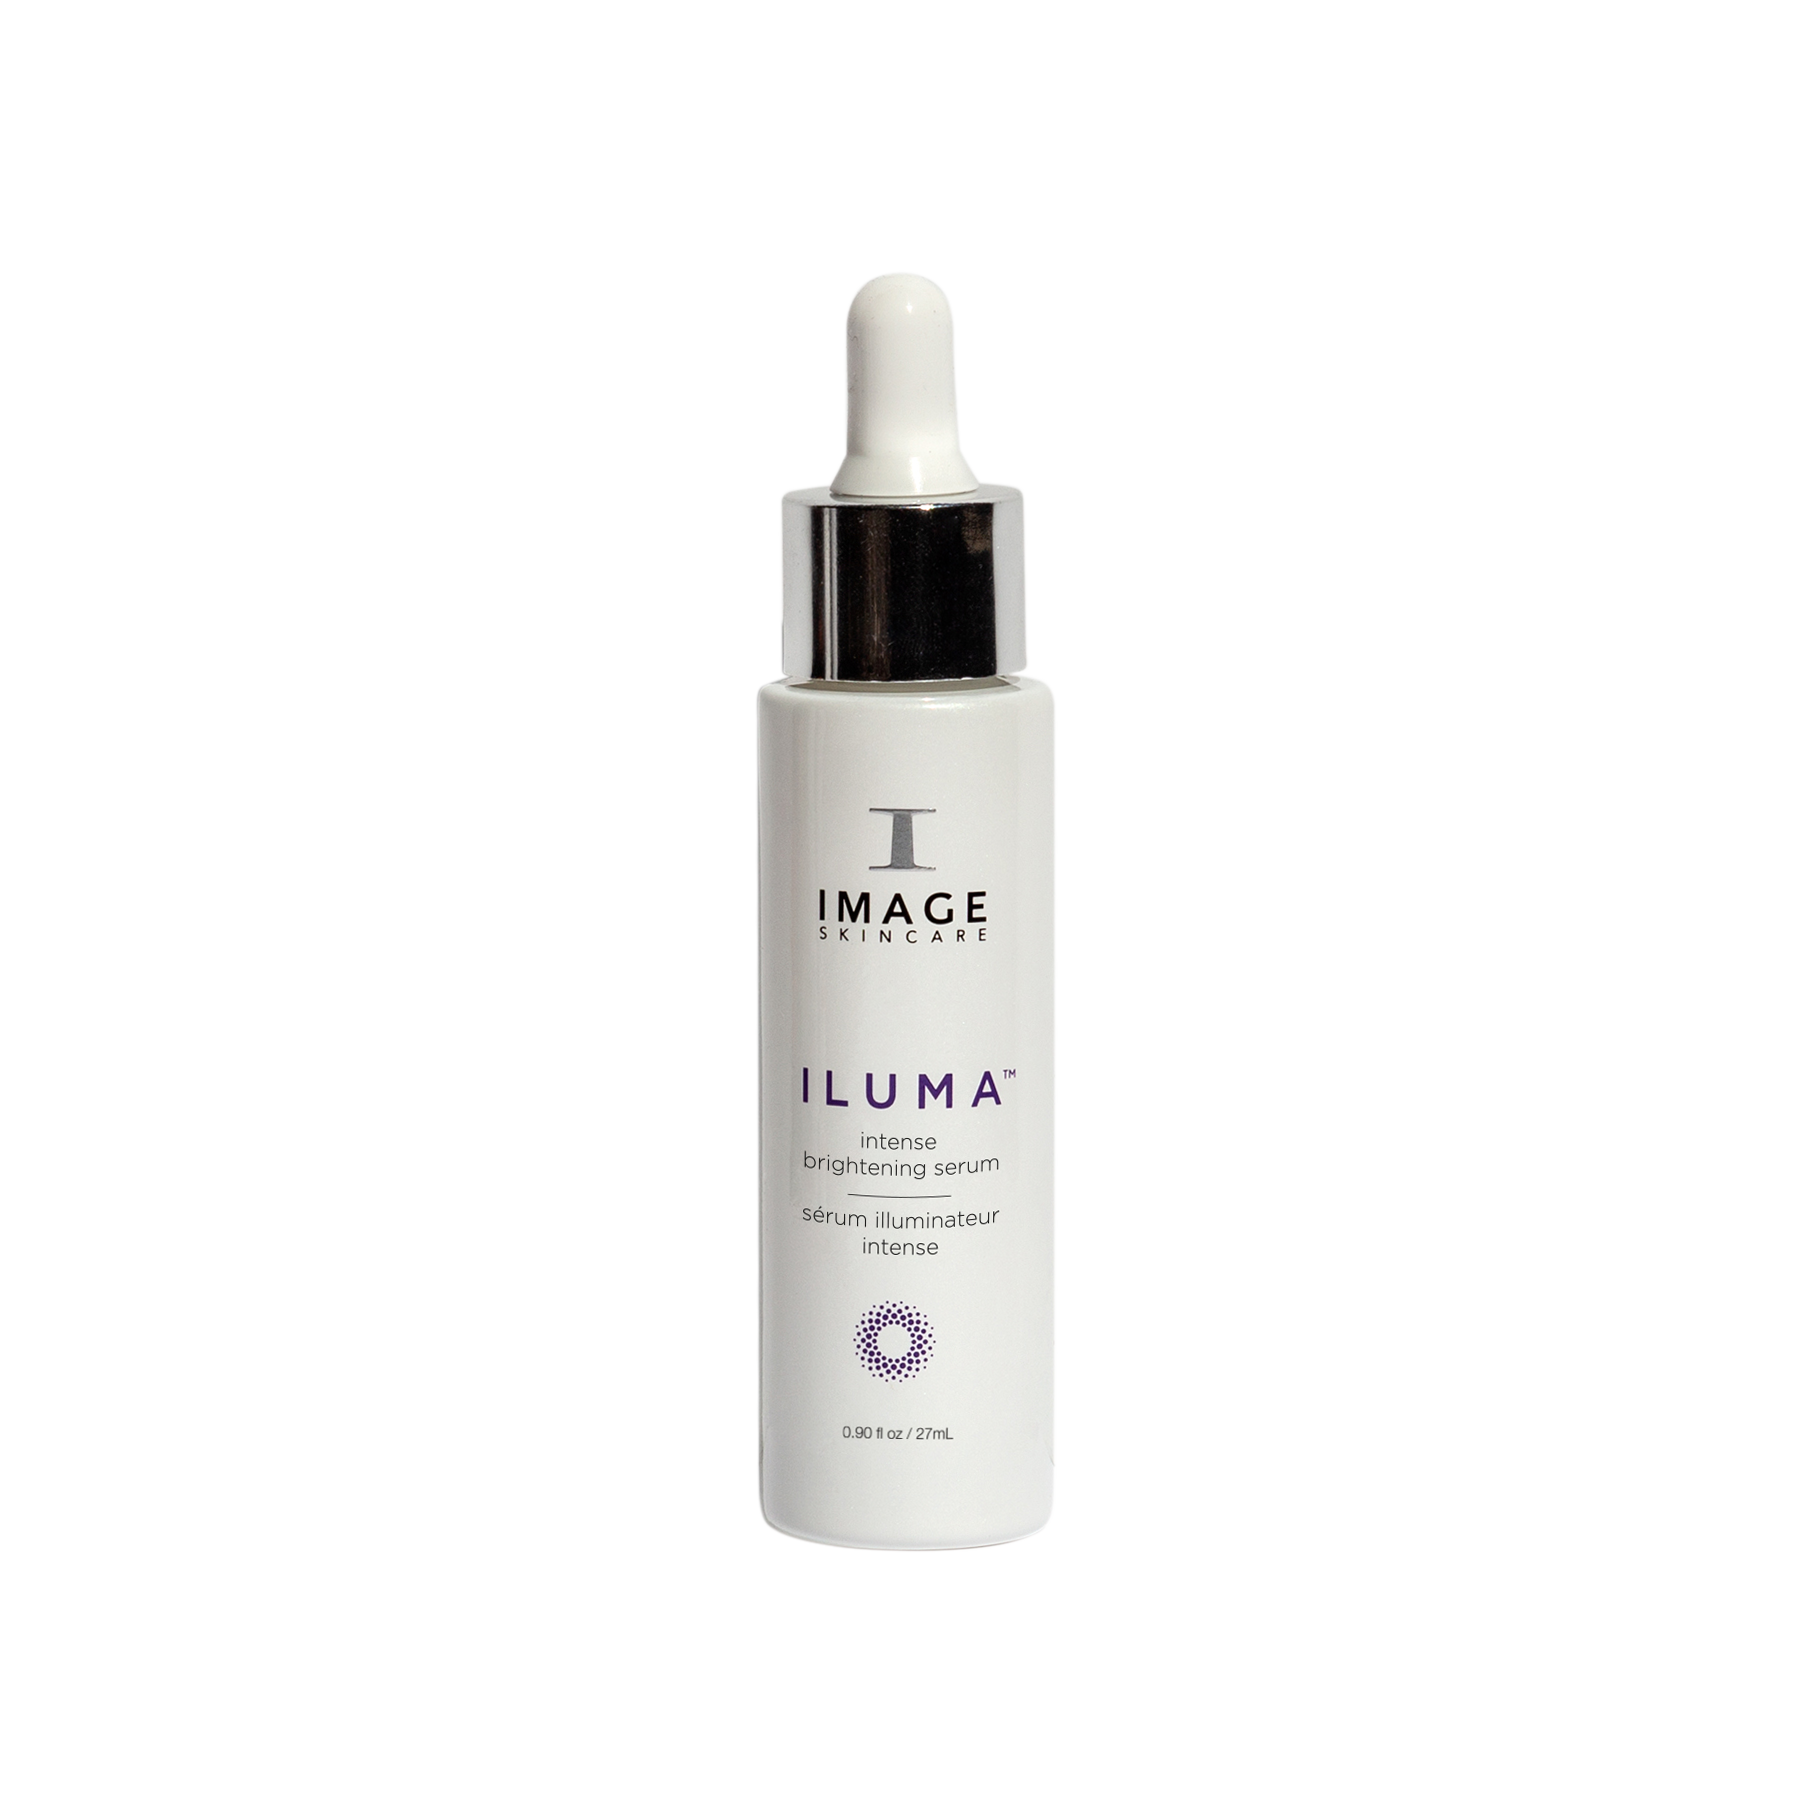 ILUMA - Intense Brightening Serum